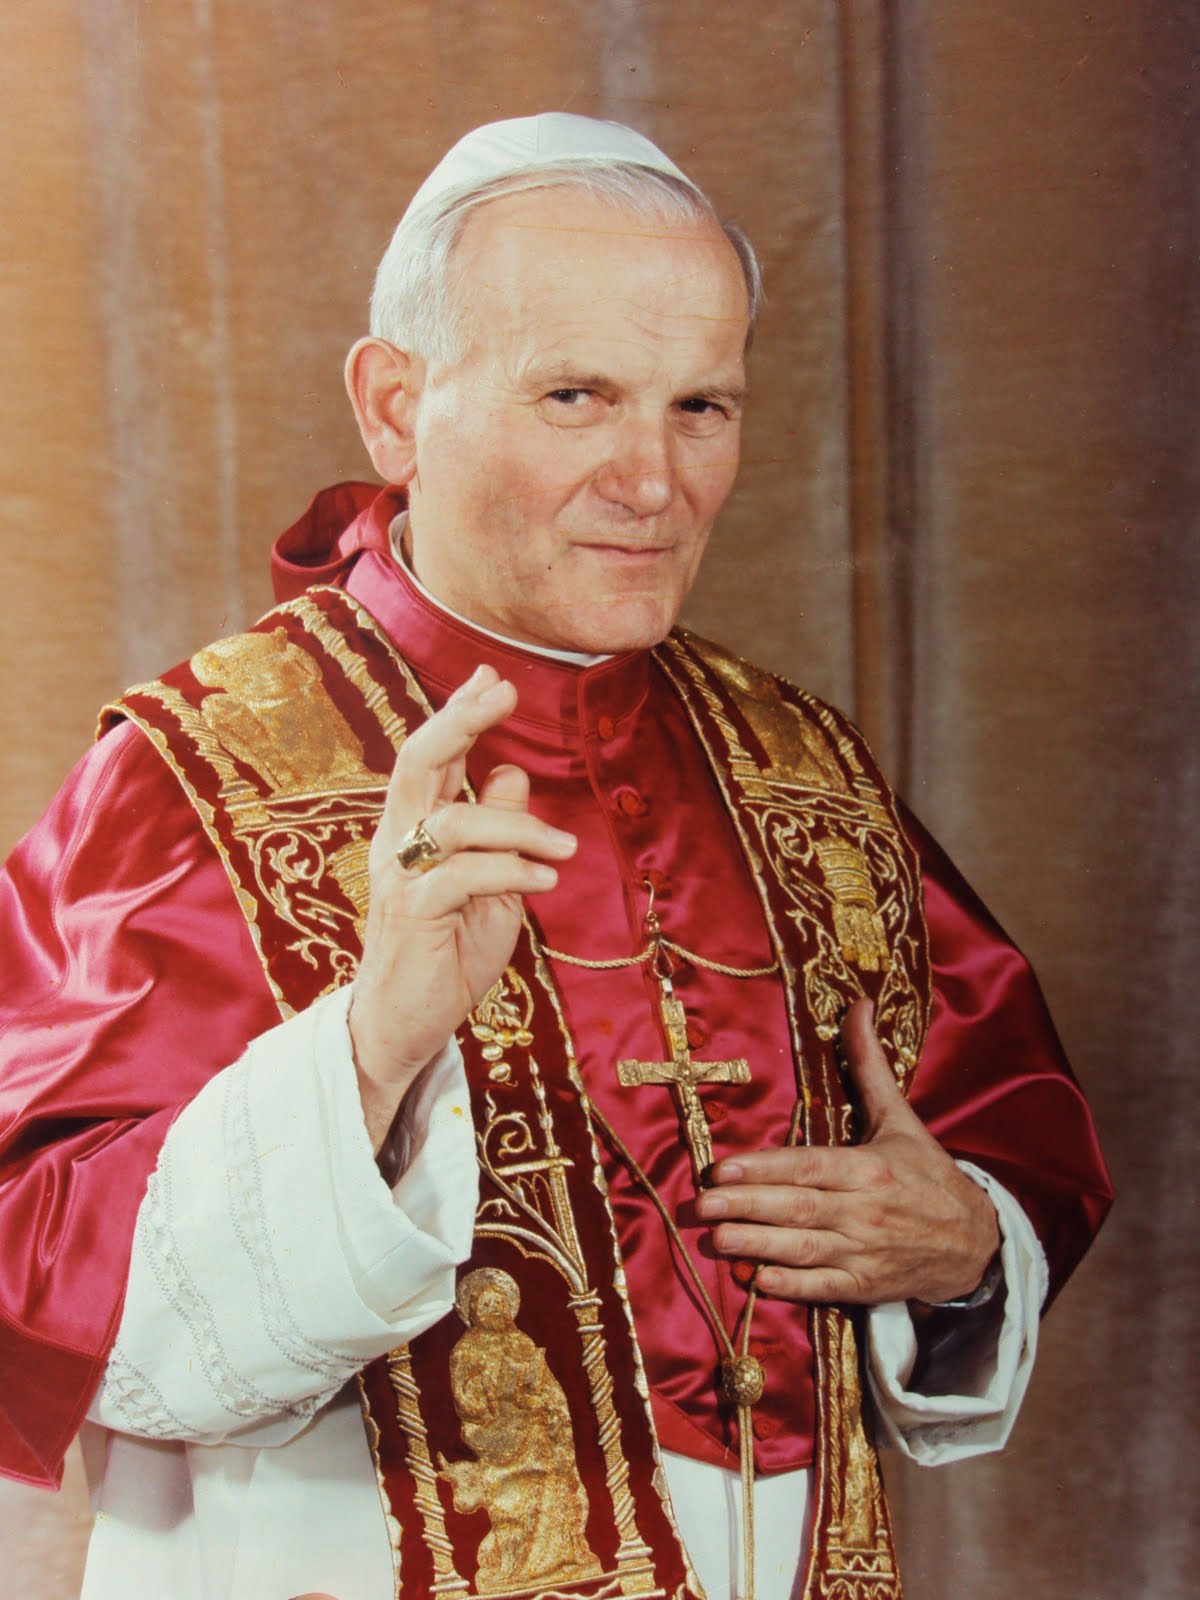 Rencontres sérieuses | Site d'entraide saint Jean-Paul II